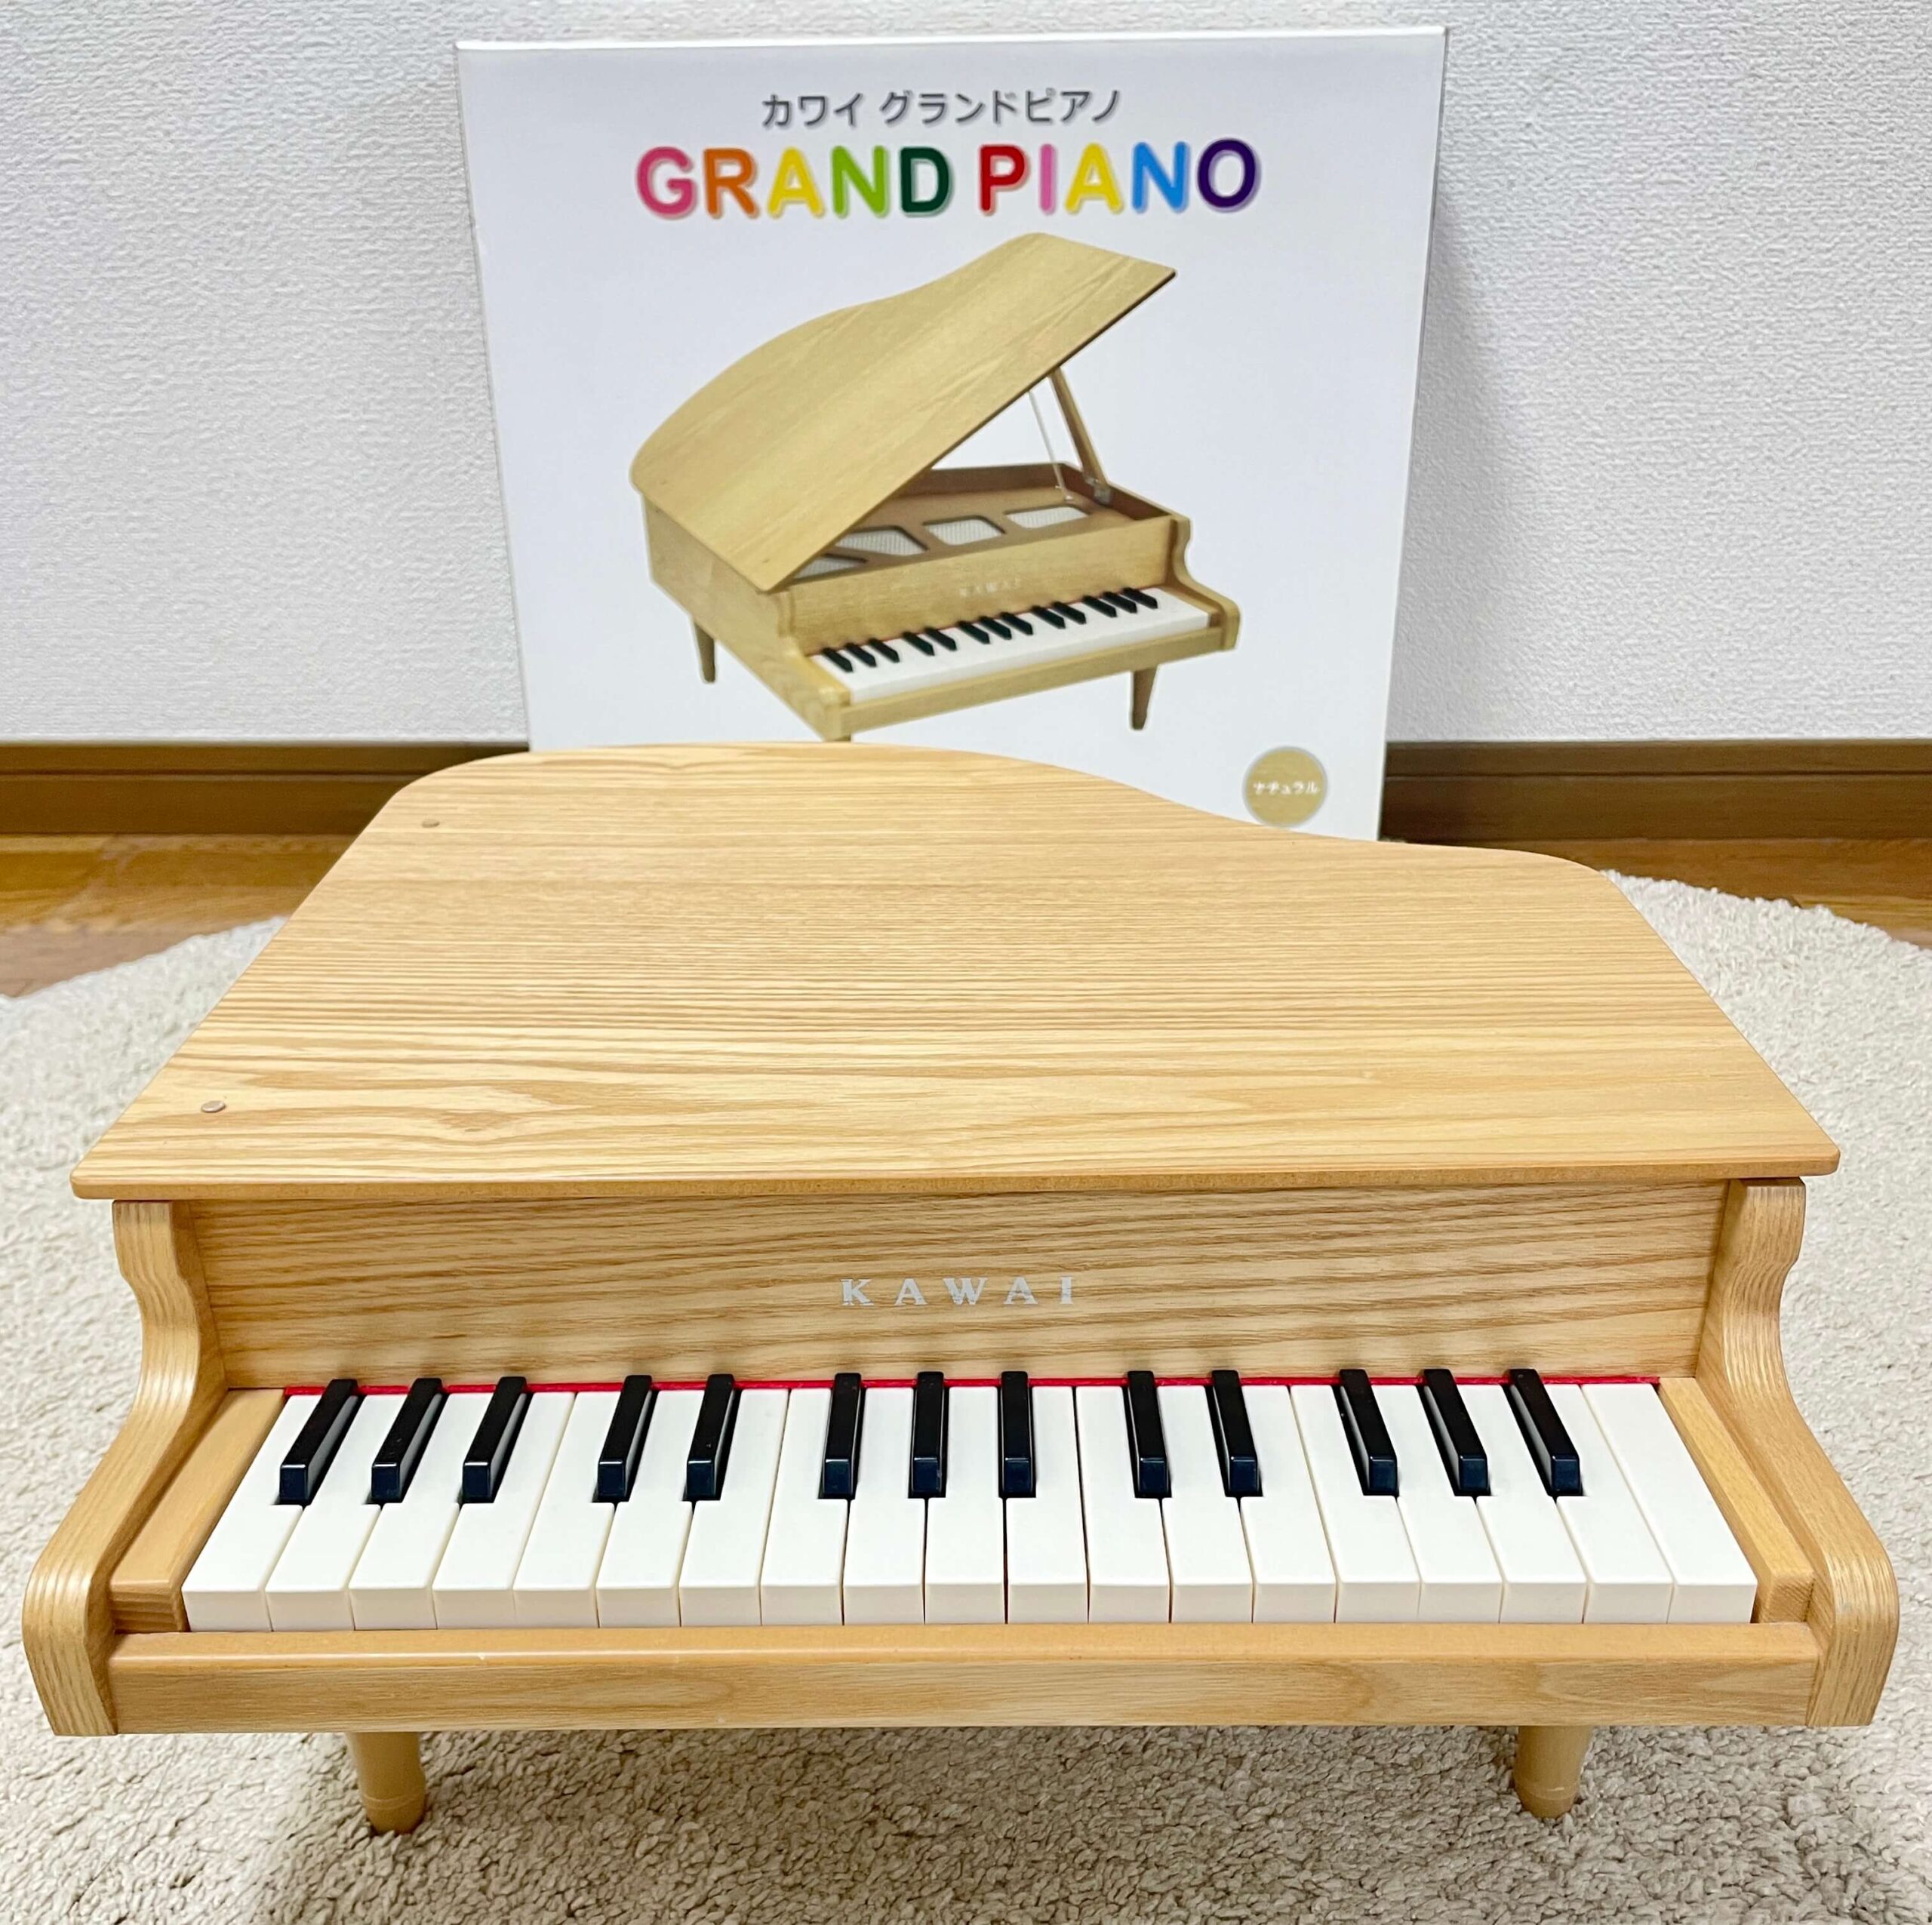 私の購入したグランドピアノナチュラルの画像